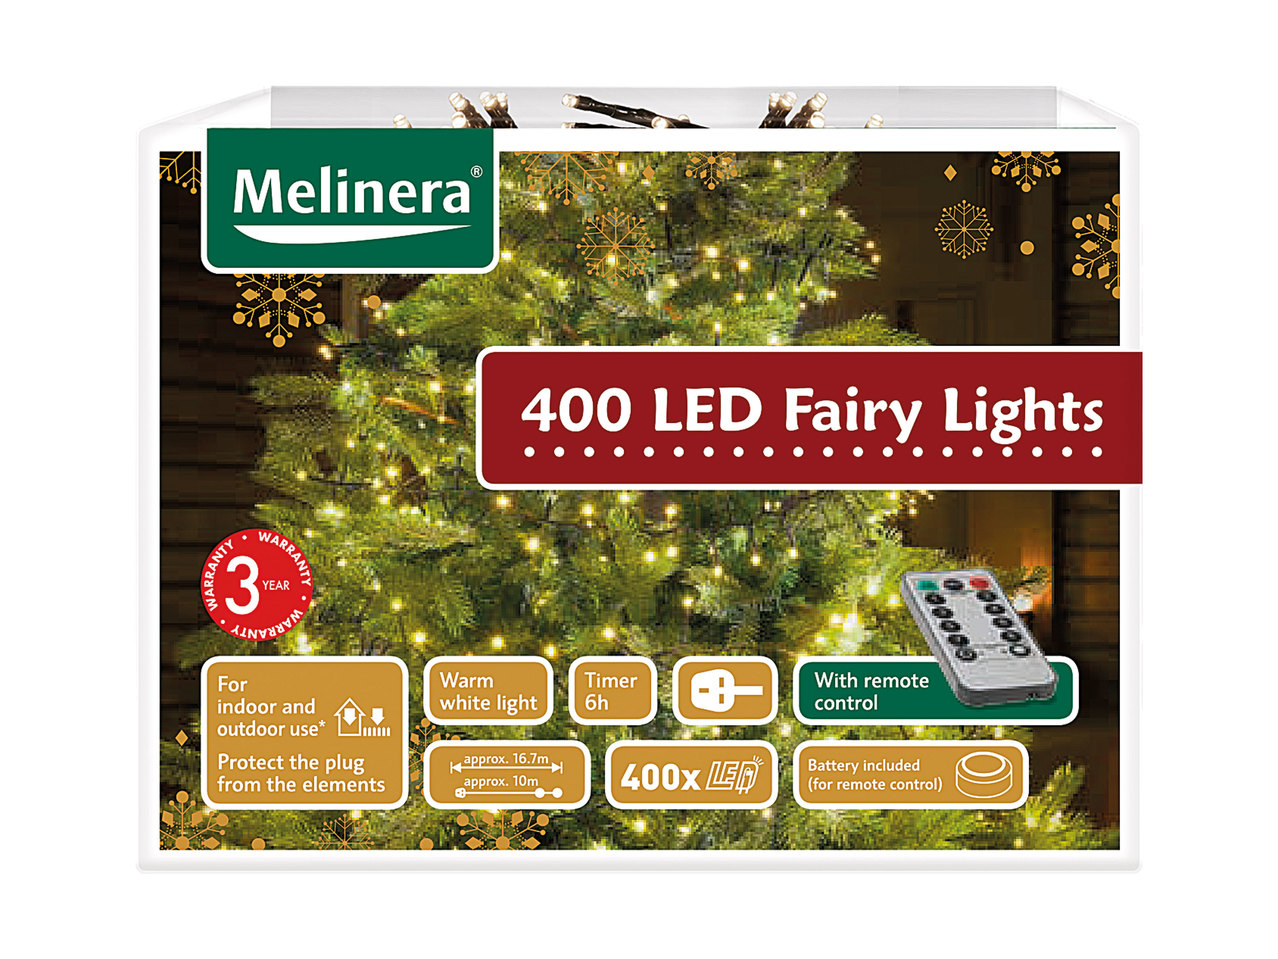 Melinera 400 LED Fairy Lights1